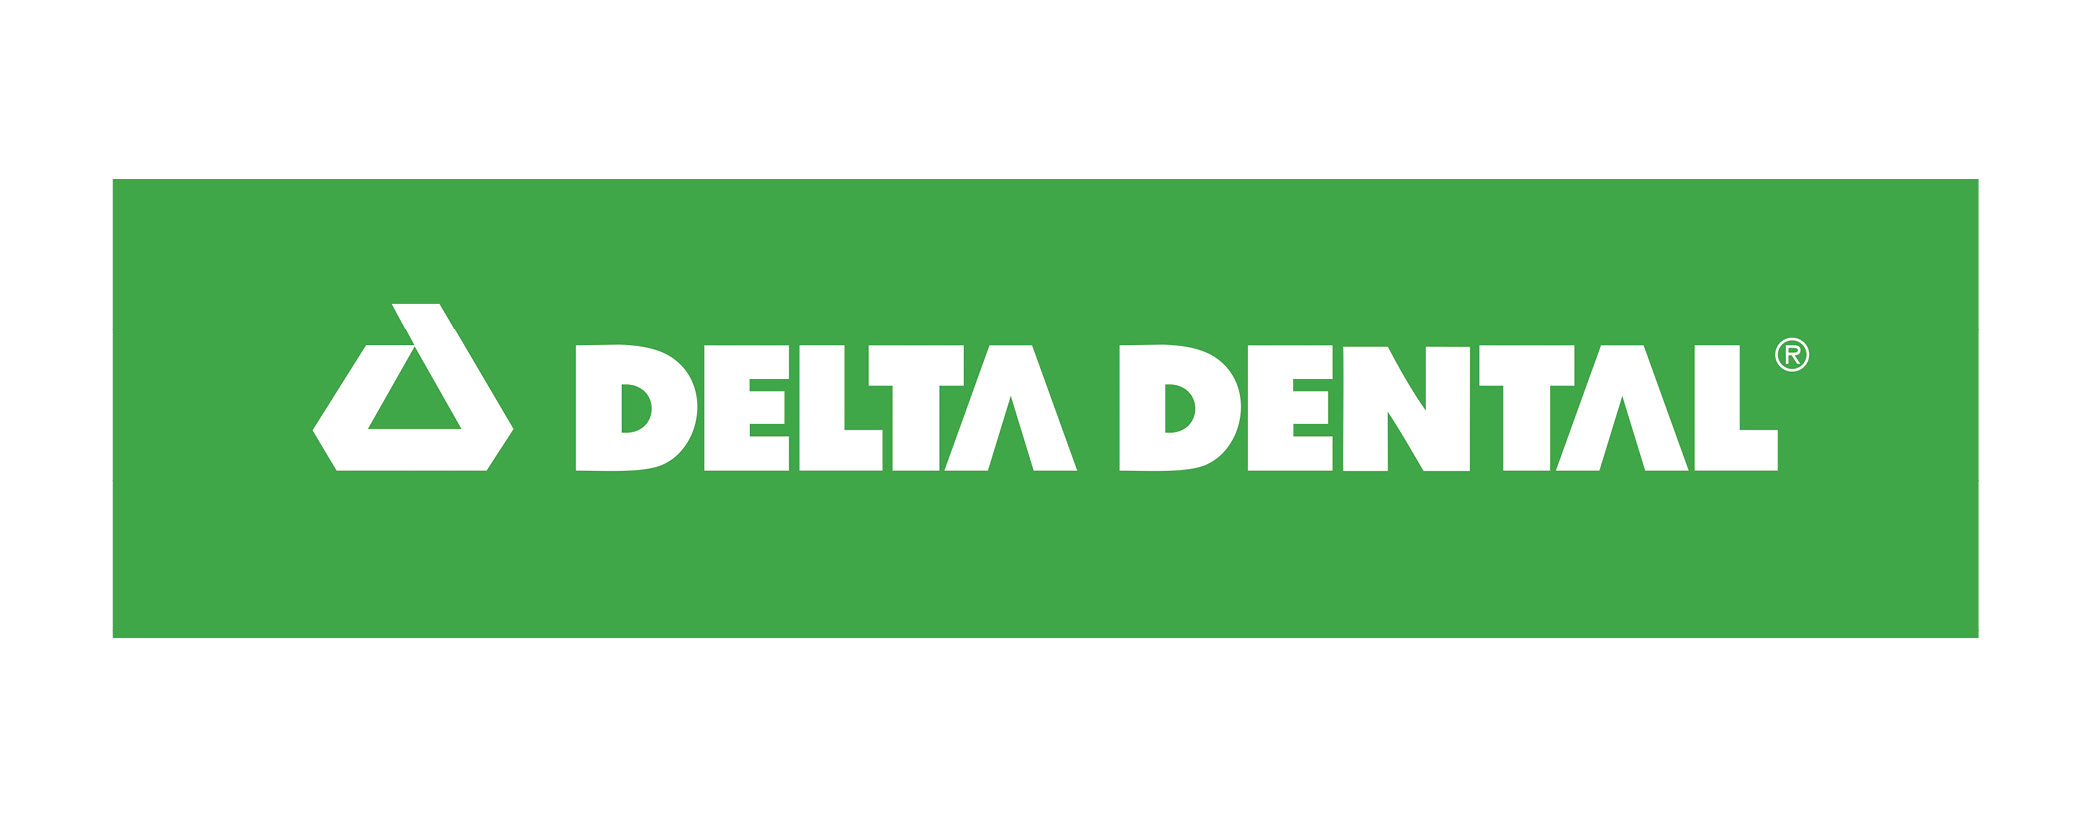 DeltaDental